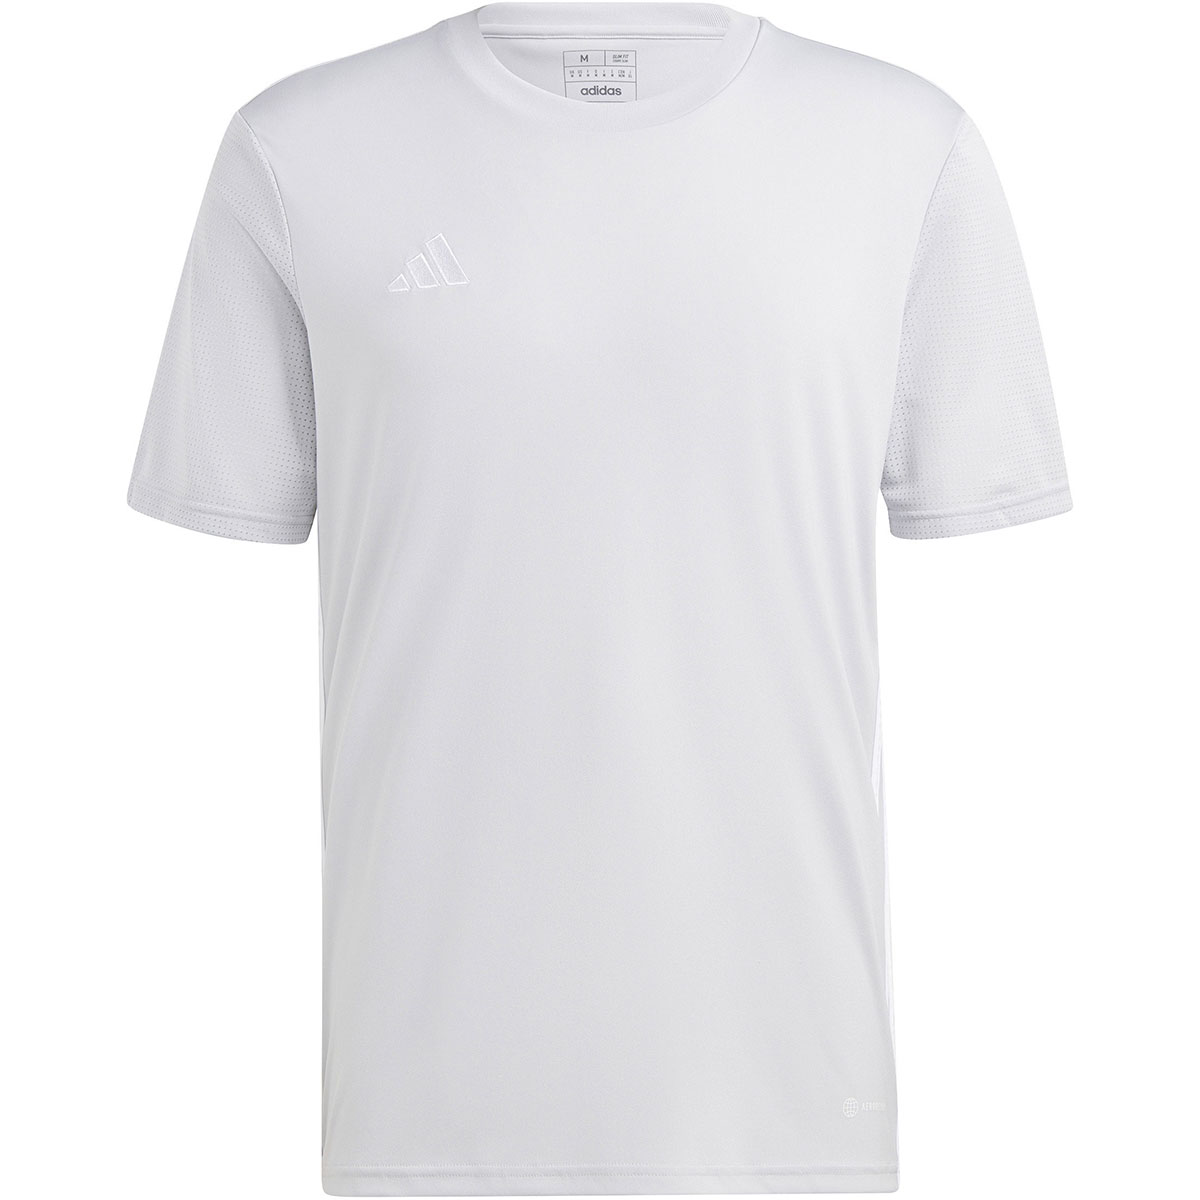 Adidas Herren Trikot Tabela 23 grau-weiß online kaufen | Wir ziehen Sieger  an